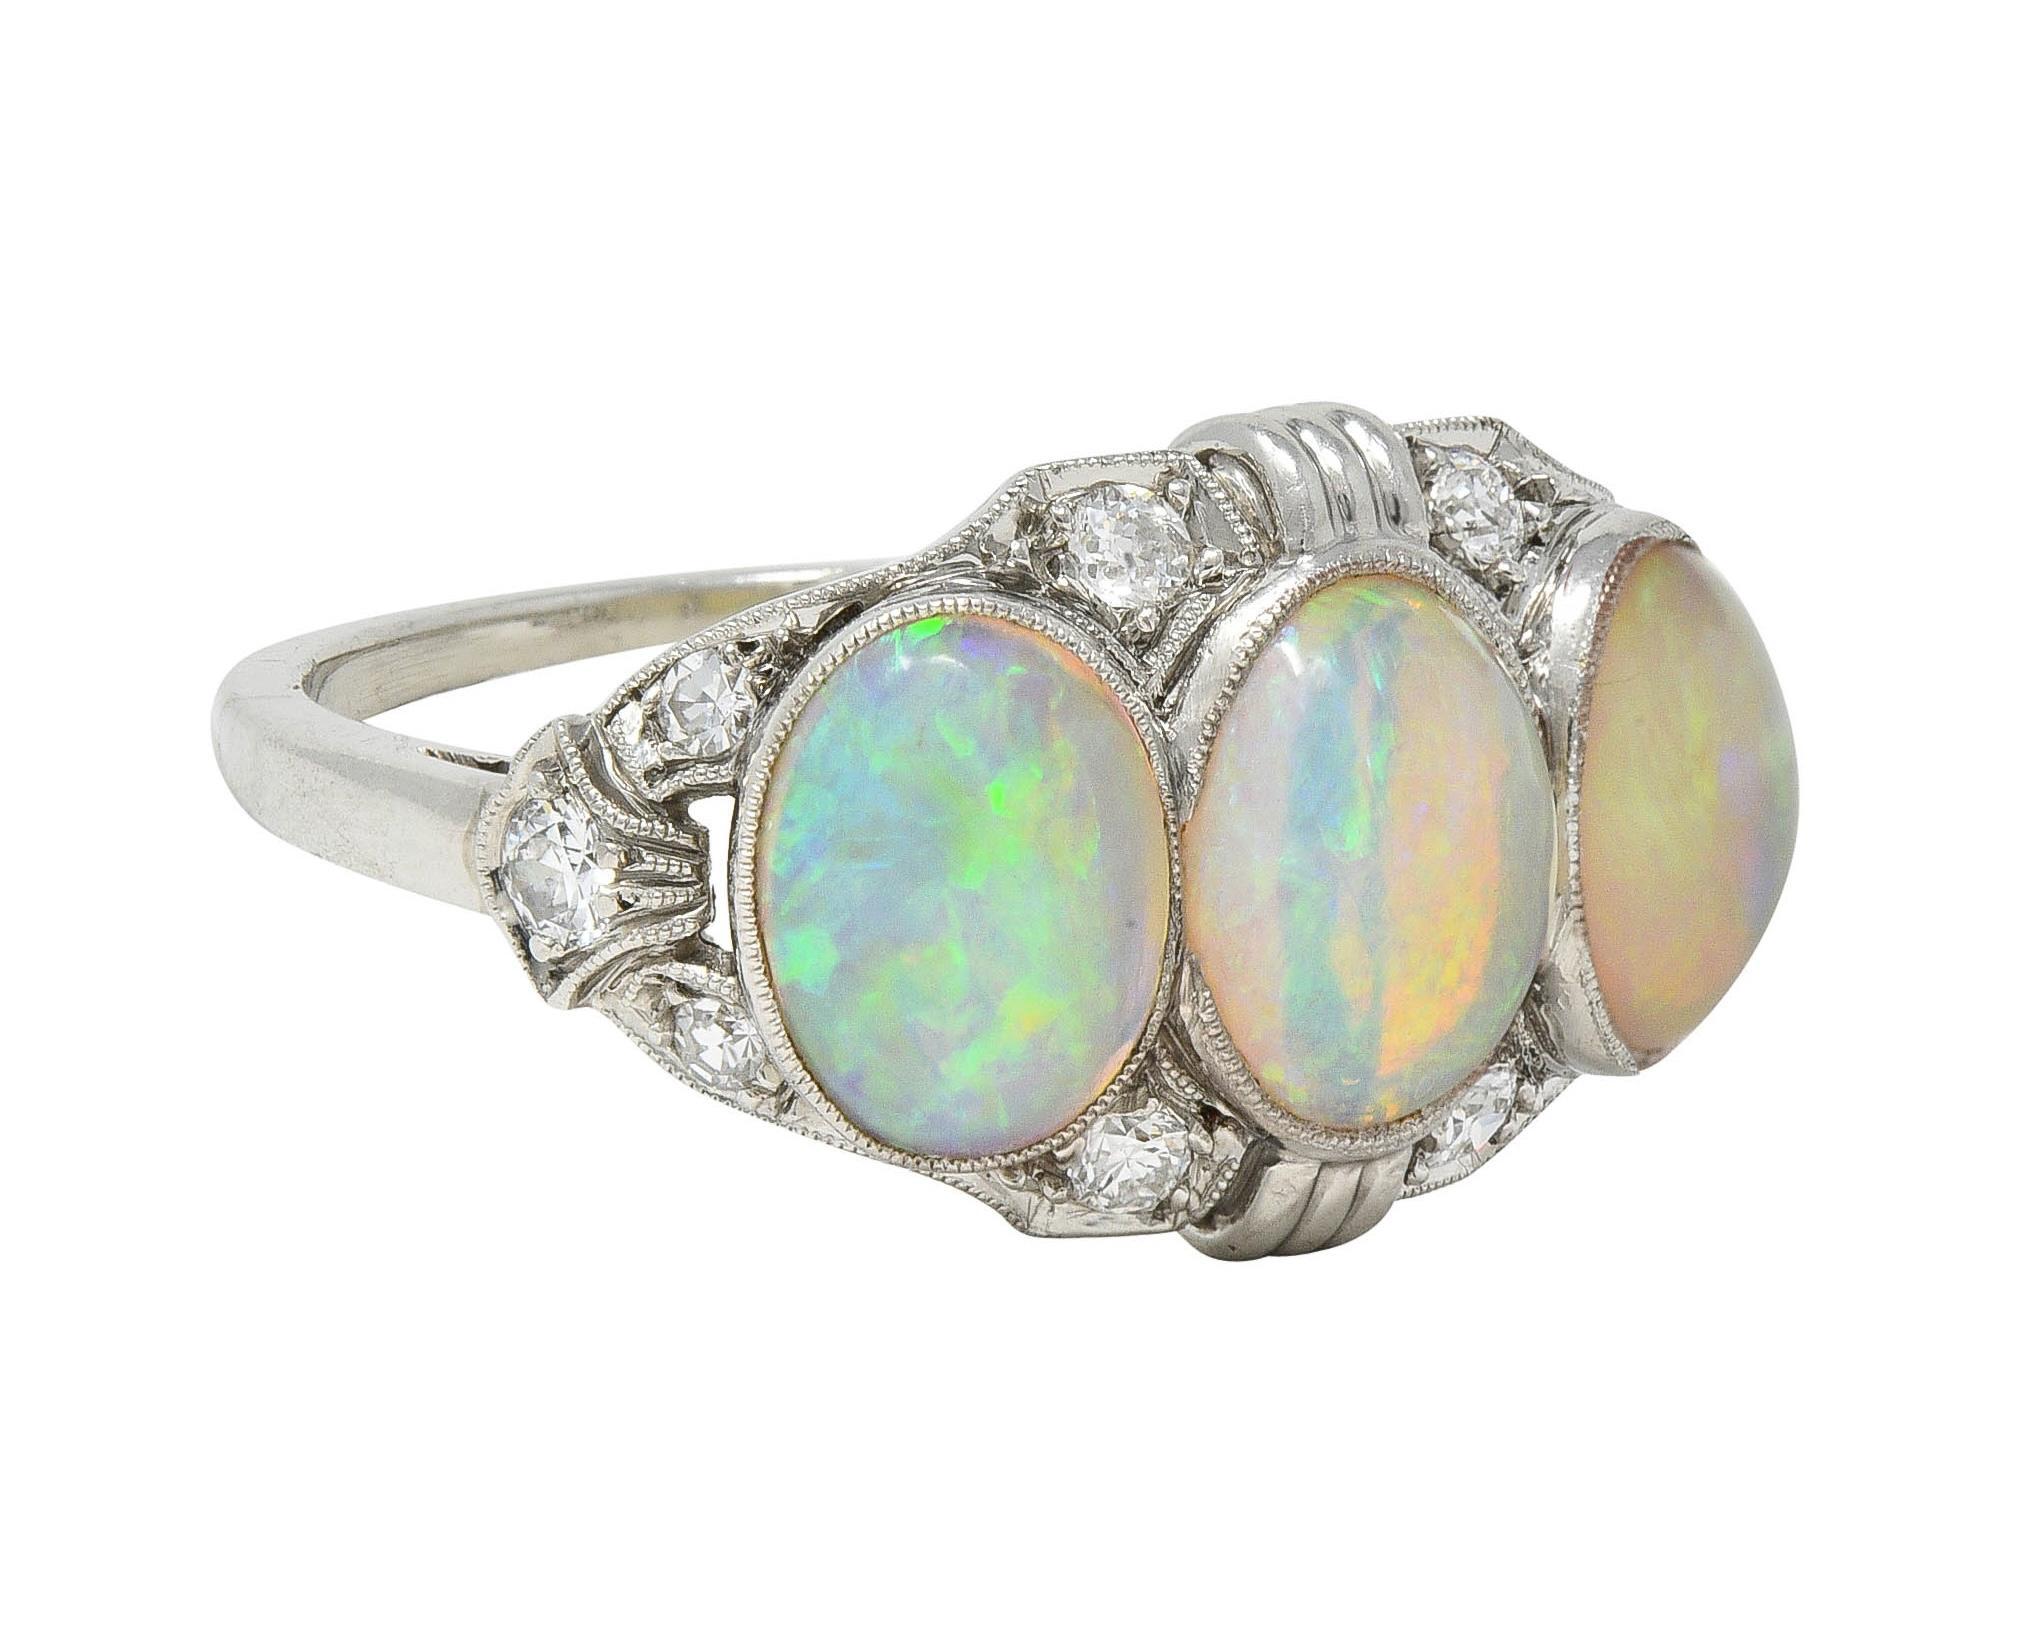 Mit drei ovalen Opal-Cabochons, die von Osten nach Westen eingefasst sind
Die Größe reicht von 5,0 x 7,0 mm bis 6,0 x 8,0 mm
Transluzente weiße Körperfarbe mit spektralem Farbenspiel
Akzentuiert durch durchgehend eingefasste Diamanten im